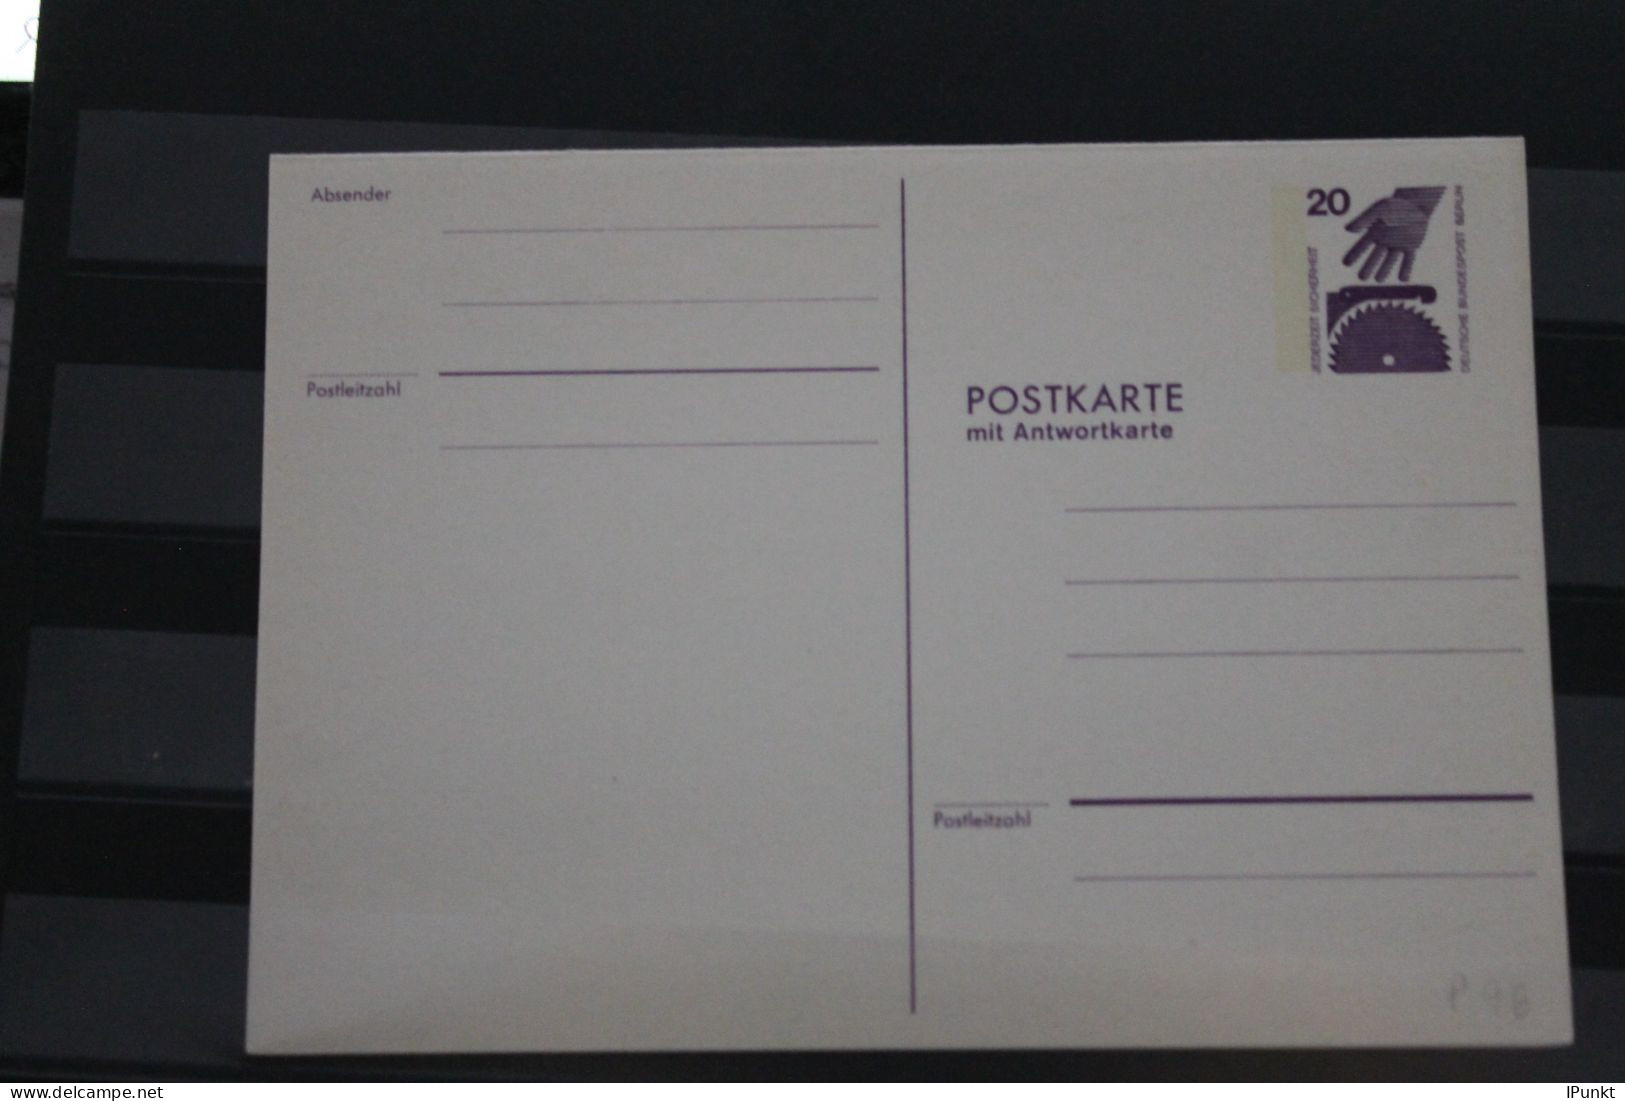 Berlin 1974; Ganzsache Unfallverhütung Postkarte Mit Antwortkarte   P 96; Ungebraucht - Cartes Postales - Neuves